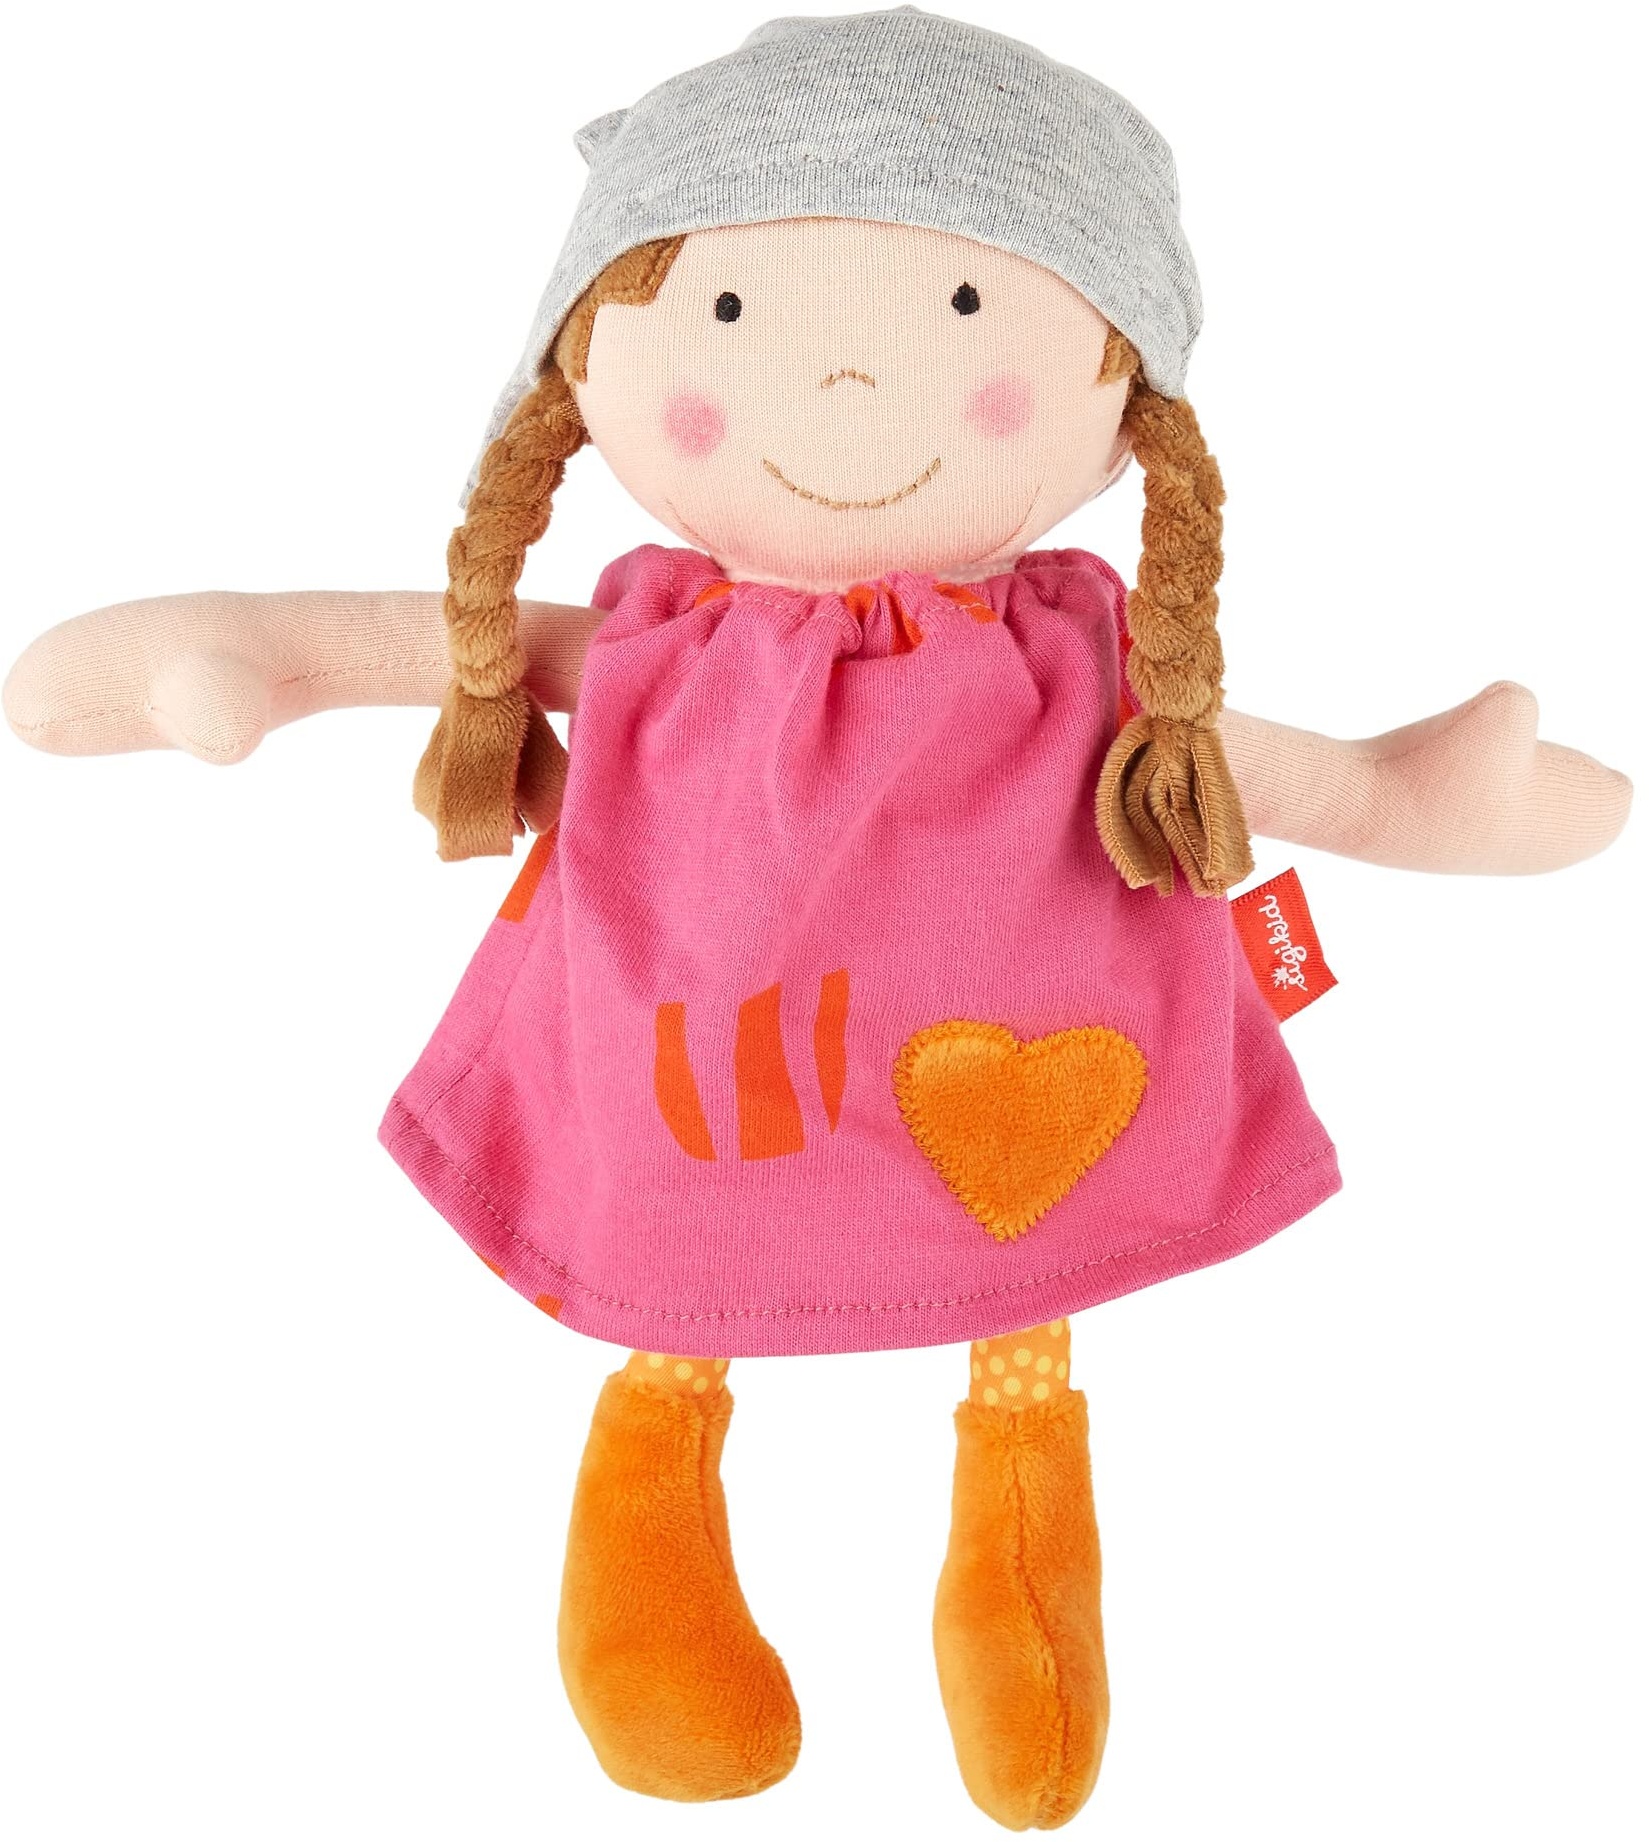 SIGIKID 39409 Puppe klein Softdolls Mädchen Babyspielzeug empfohlen ab 6 Monaten pink, STK